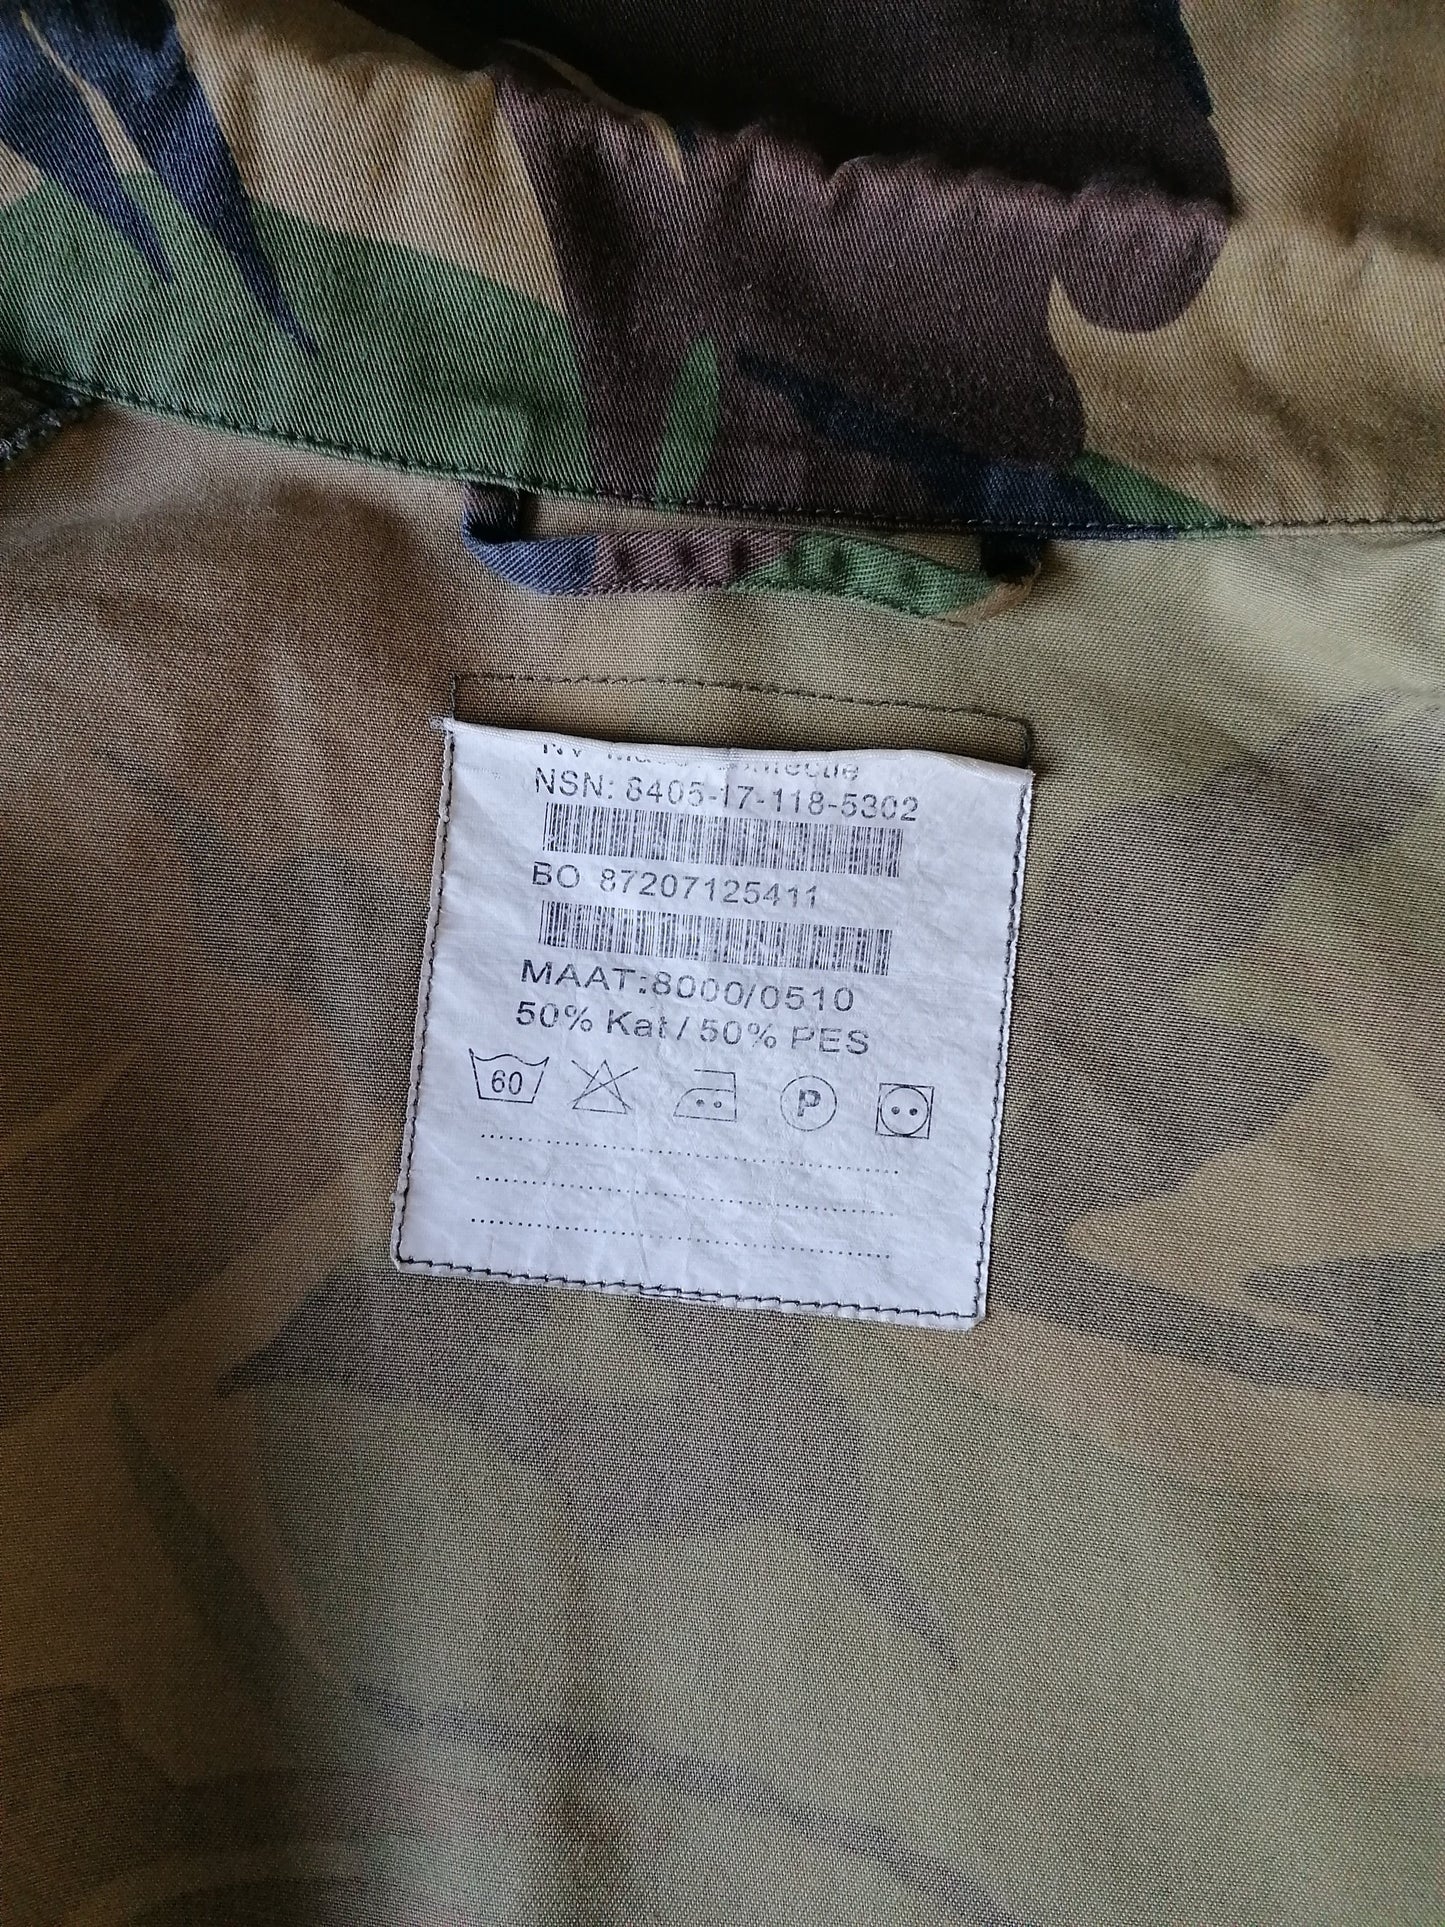 Chemise d'Armée Vintage / Armée. Imprimé de camouflage avec des poteaux de presse. Taille xl. Original.